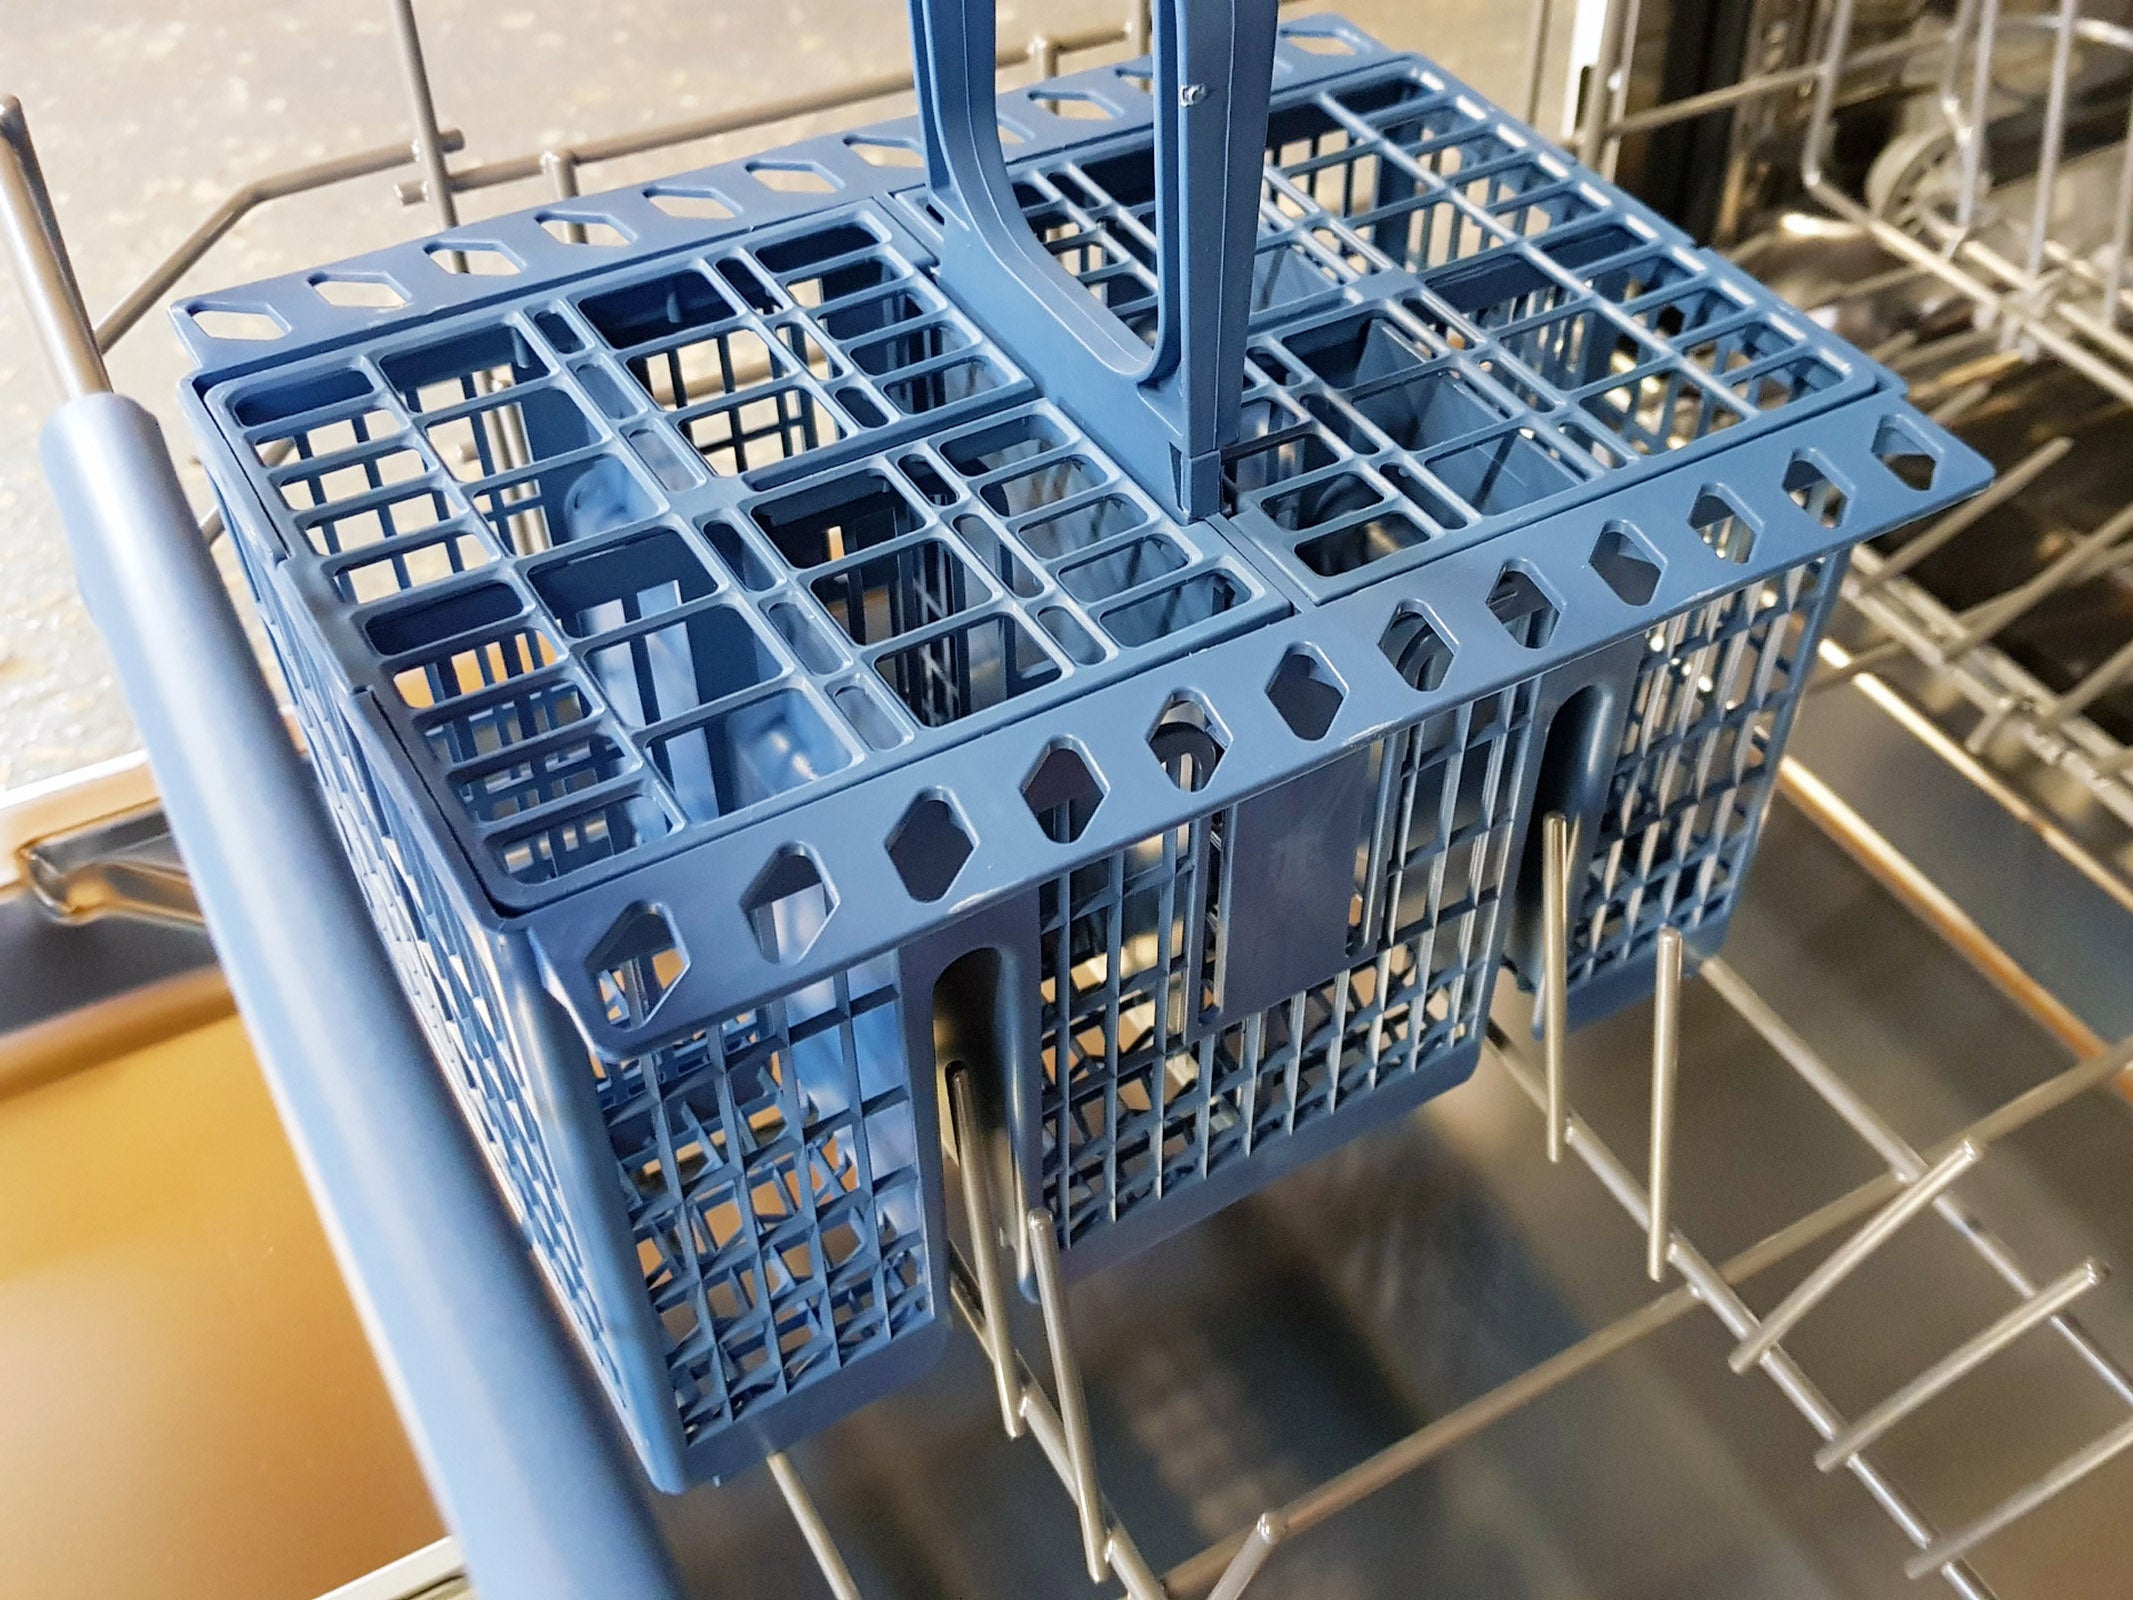 Blue cutlery basket inside an open dishwasher